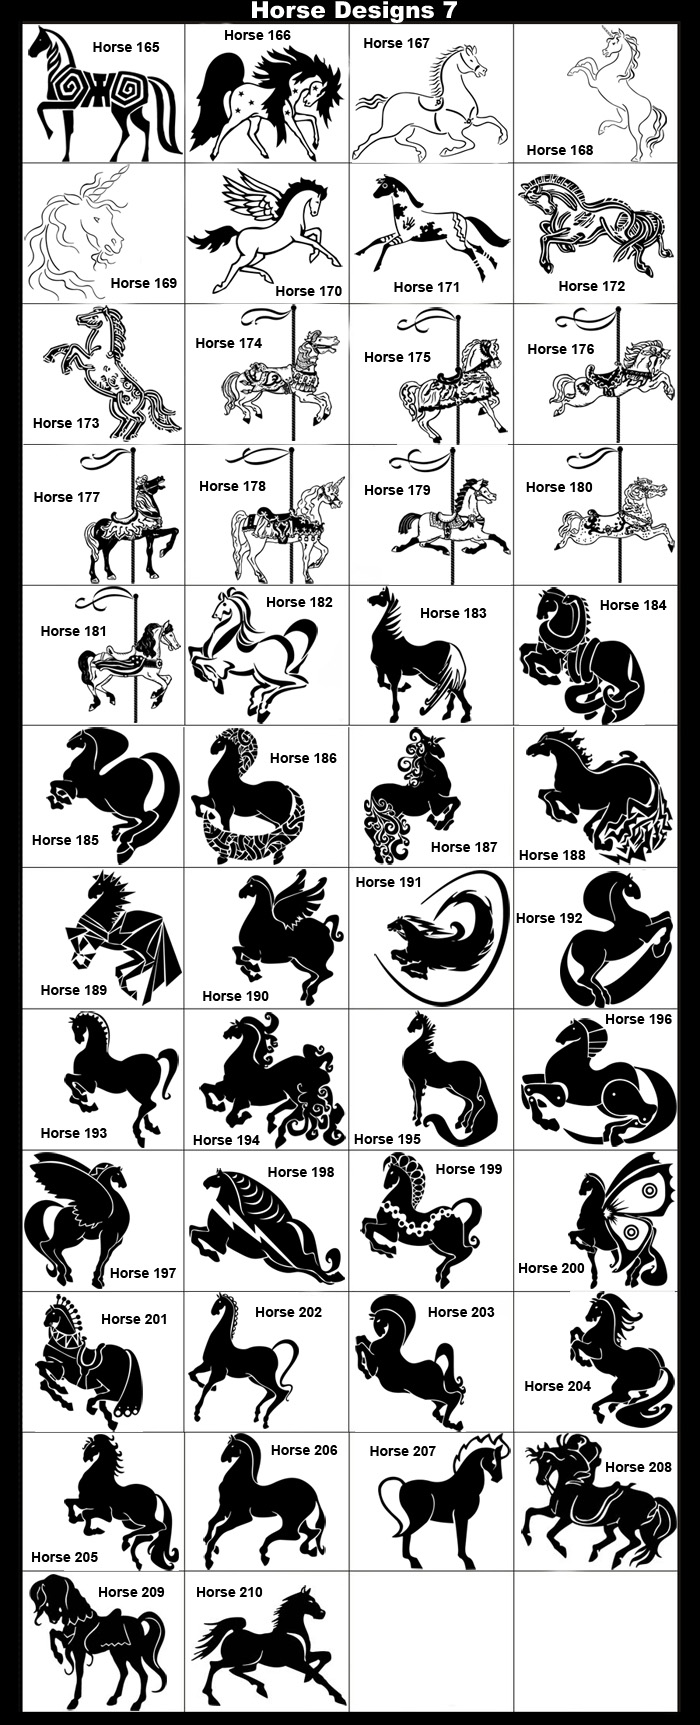 Decorative Horses, Whimsical Horses, Indian Horses, Spiritual Horses, Carousal Horses, Unicorn, Flying Horse, Rearing Horse